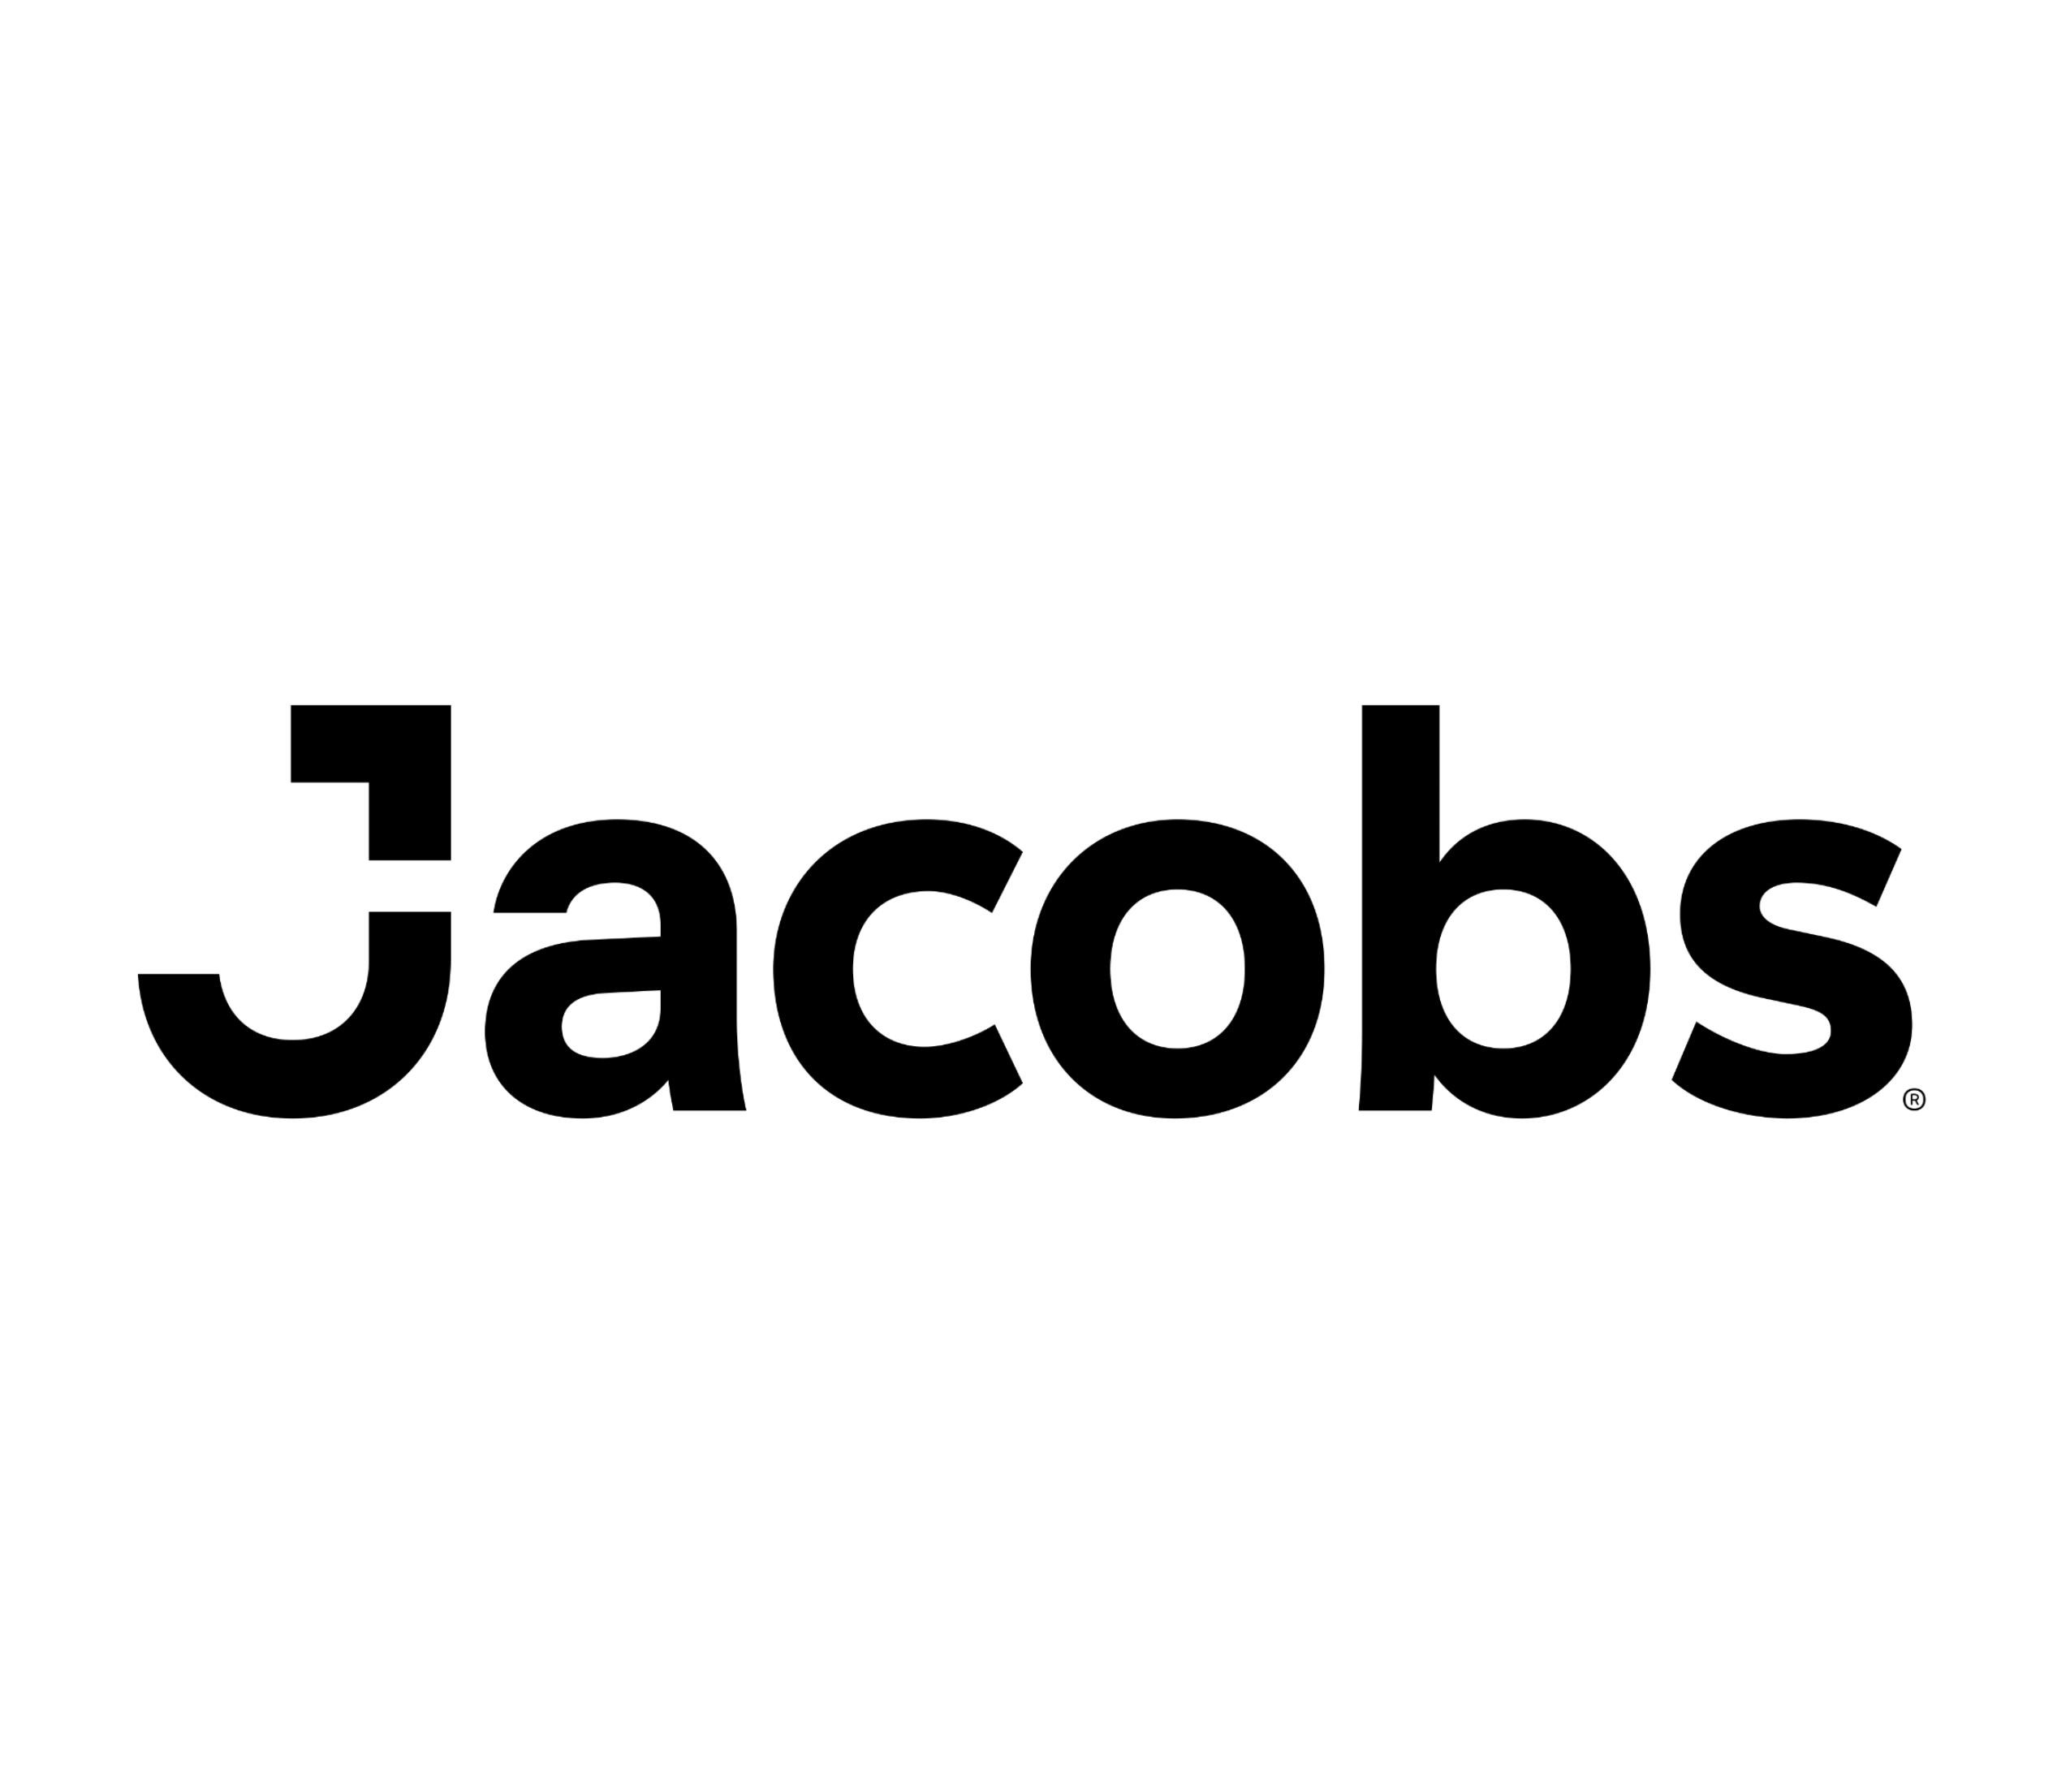 Jacobs_Logo